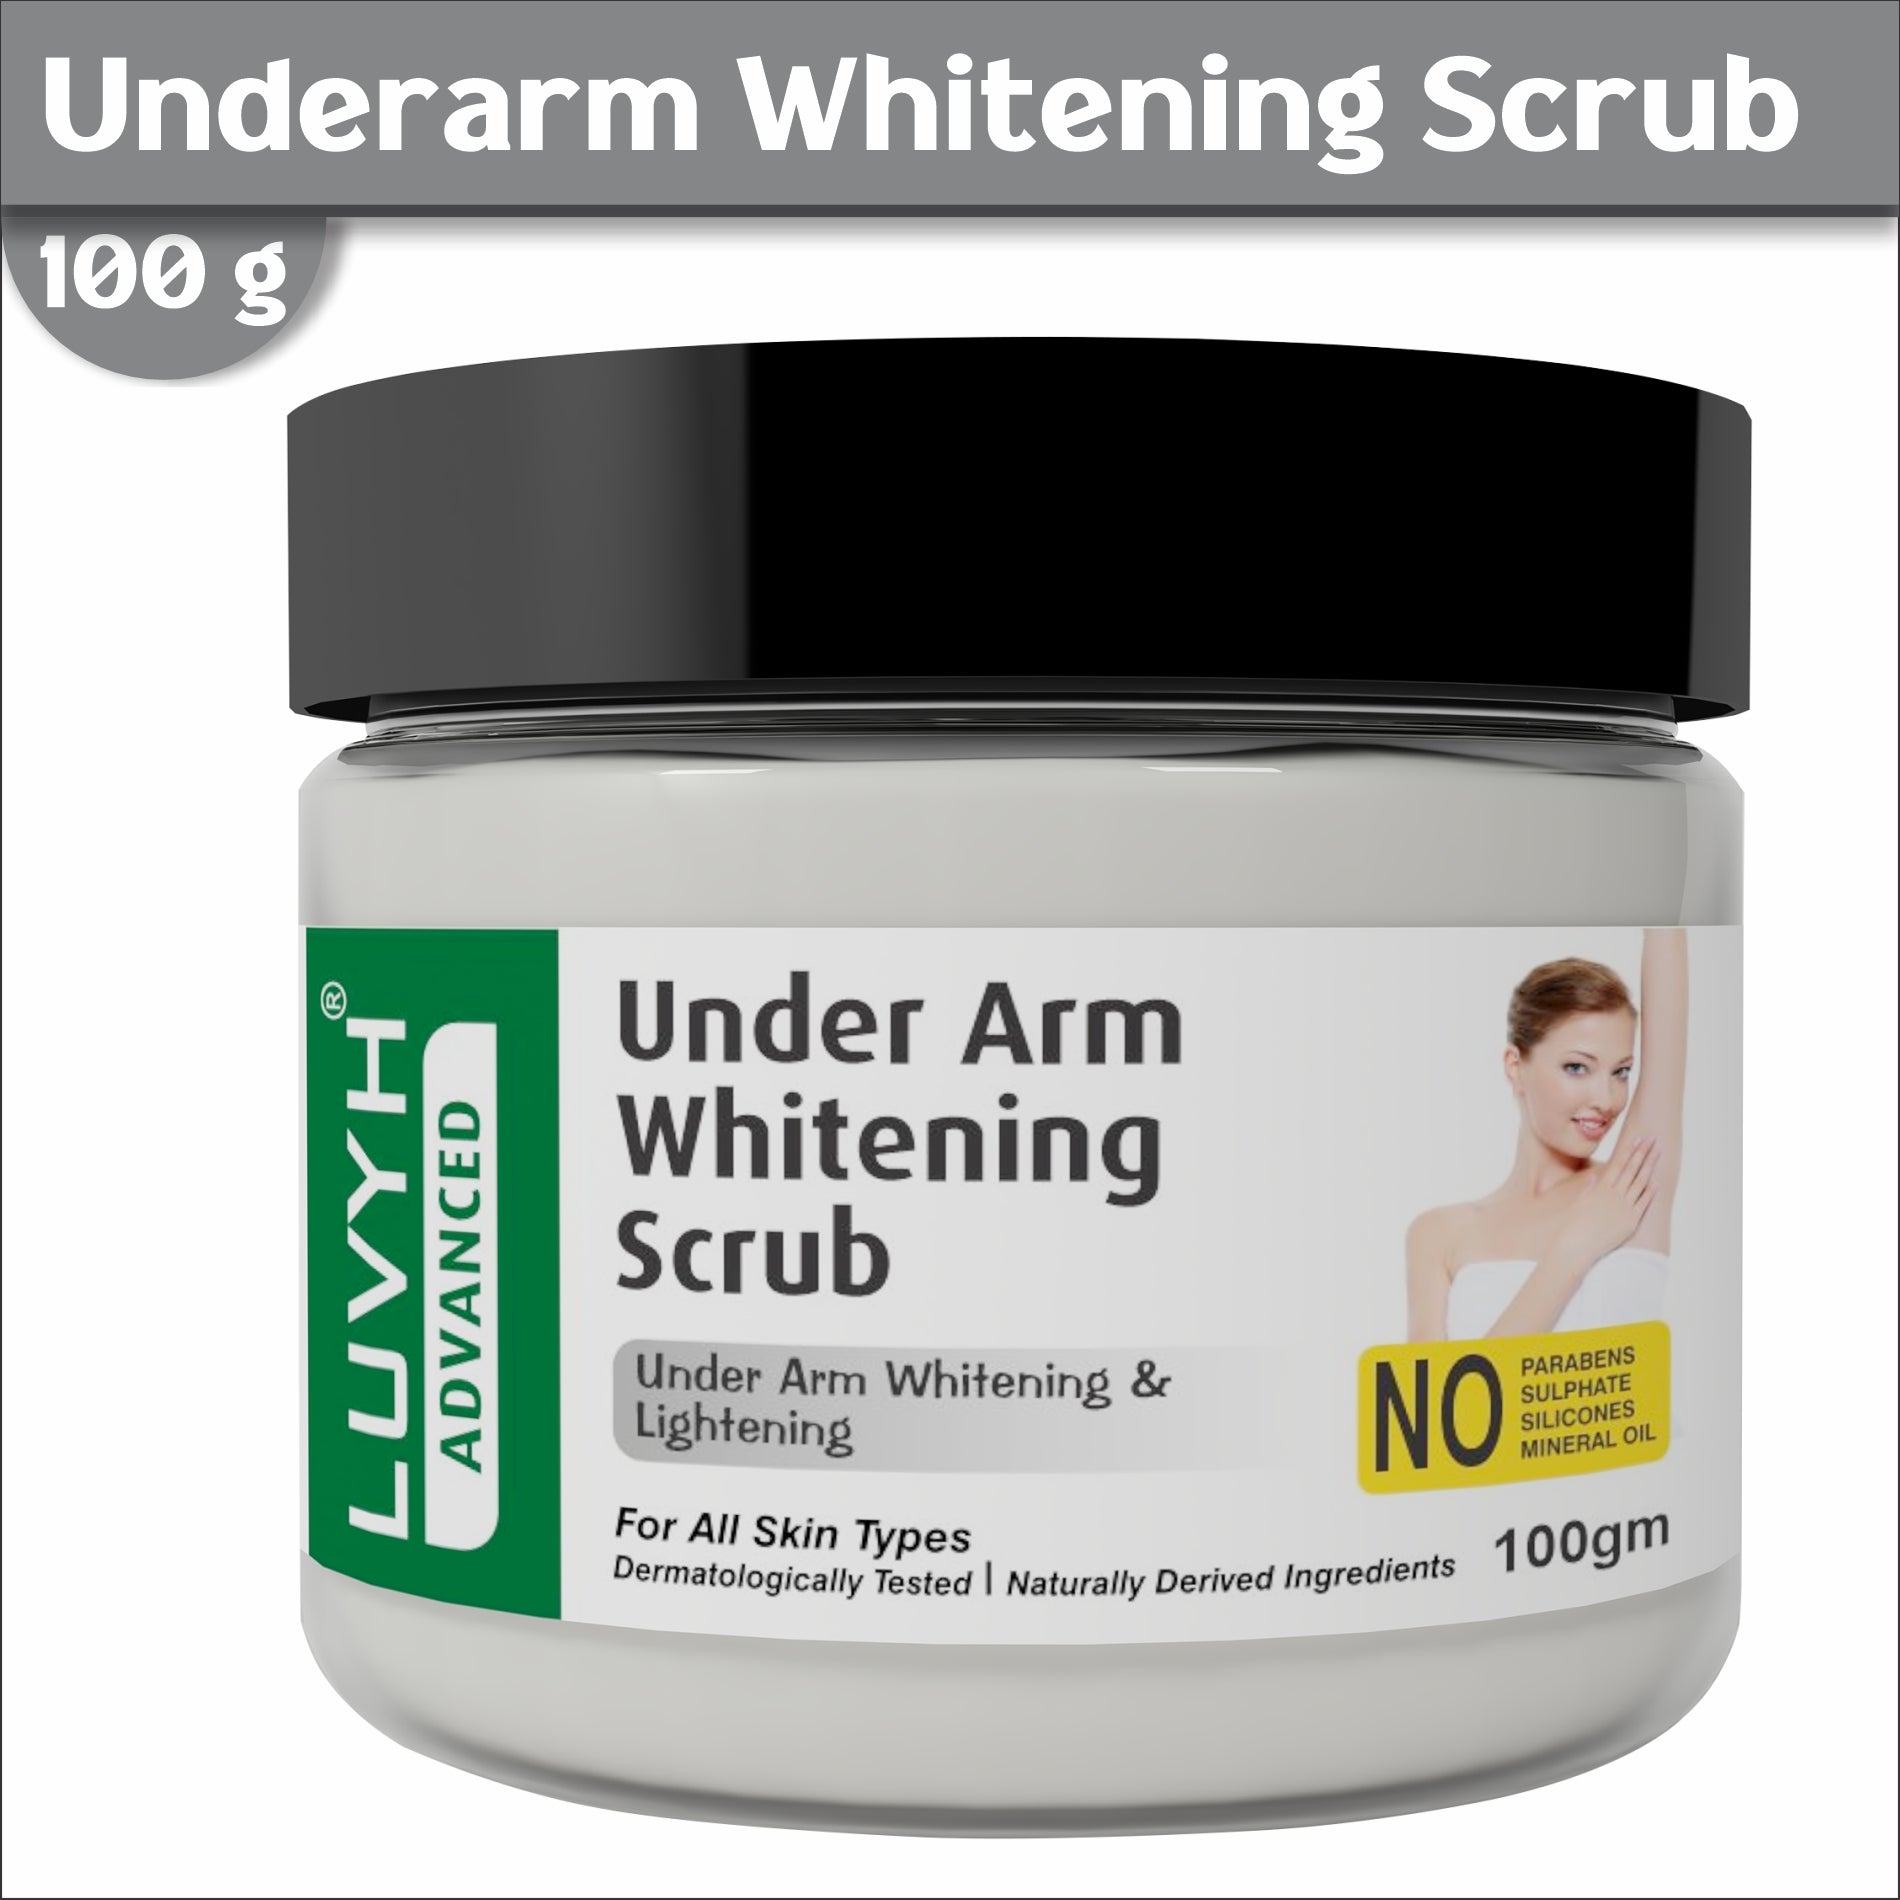 Under Arm Whitening Scrub -  Best for Brightening Underarms